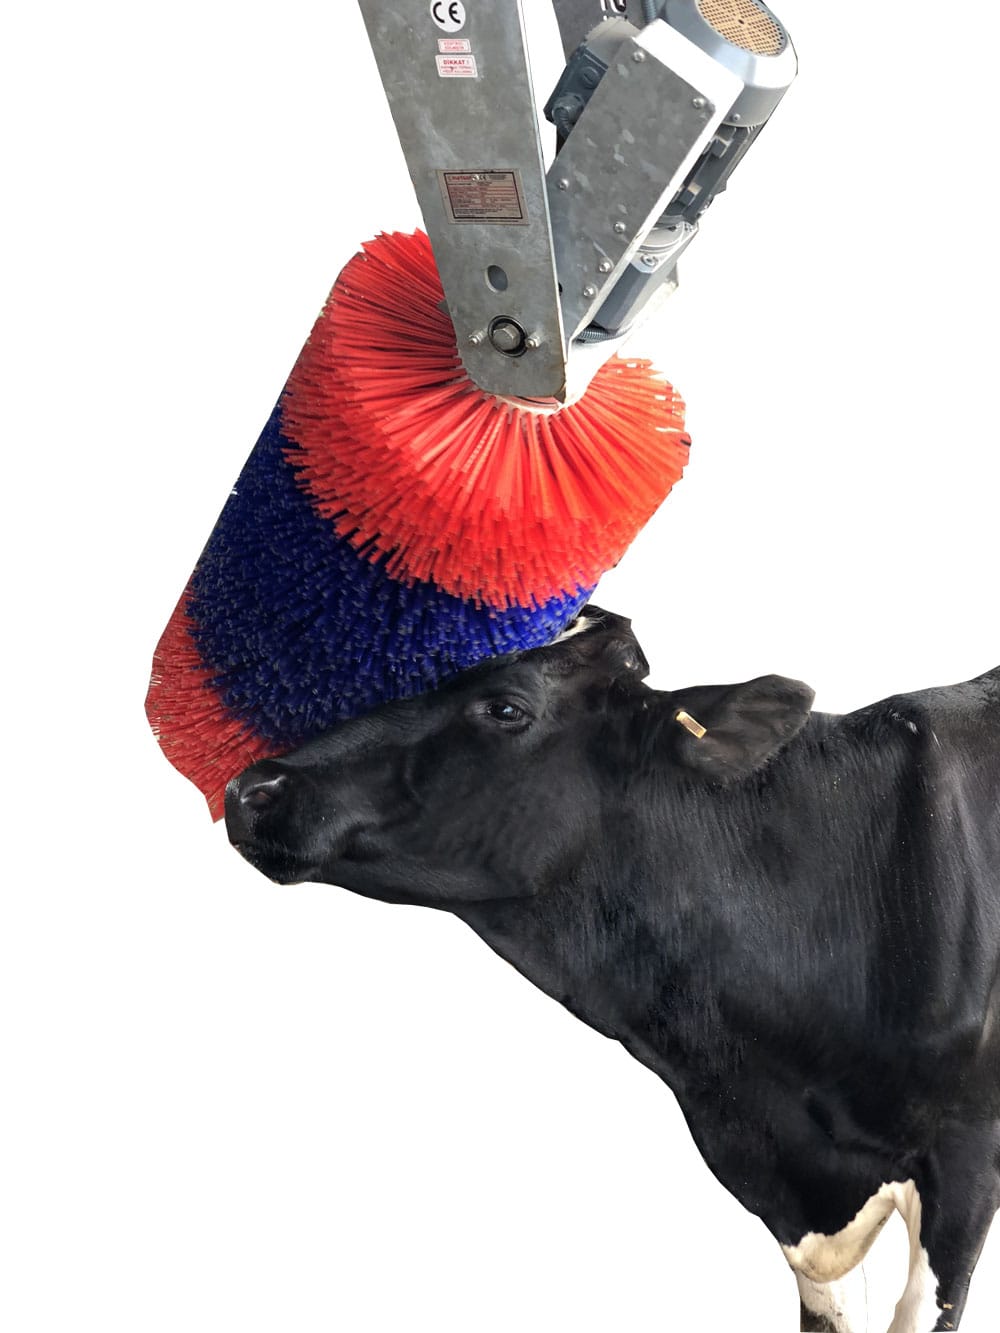 Révolutionnez la santé et la productivité de vos vaches avec le brossage automatique